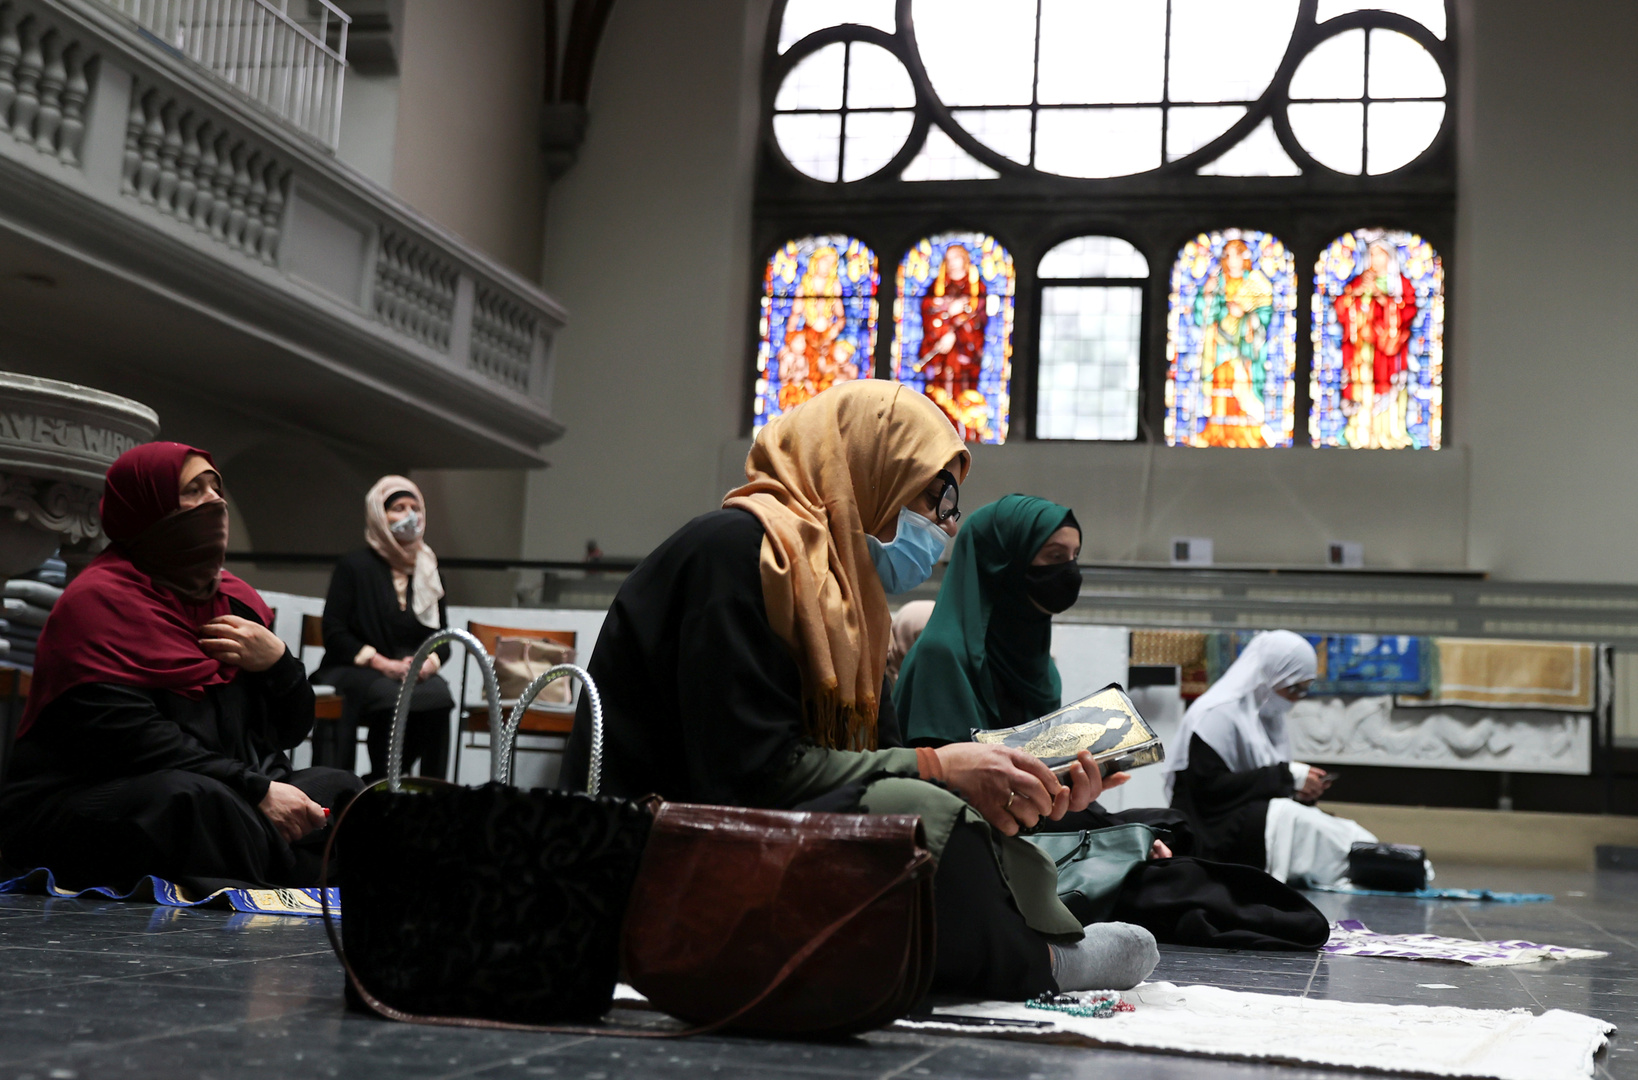 بالصور.. كنيسة في برلين تستضيف المسلمين لأداء الصلاة في ظل كورونا